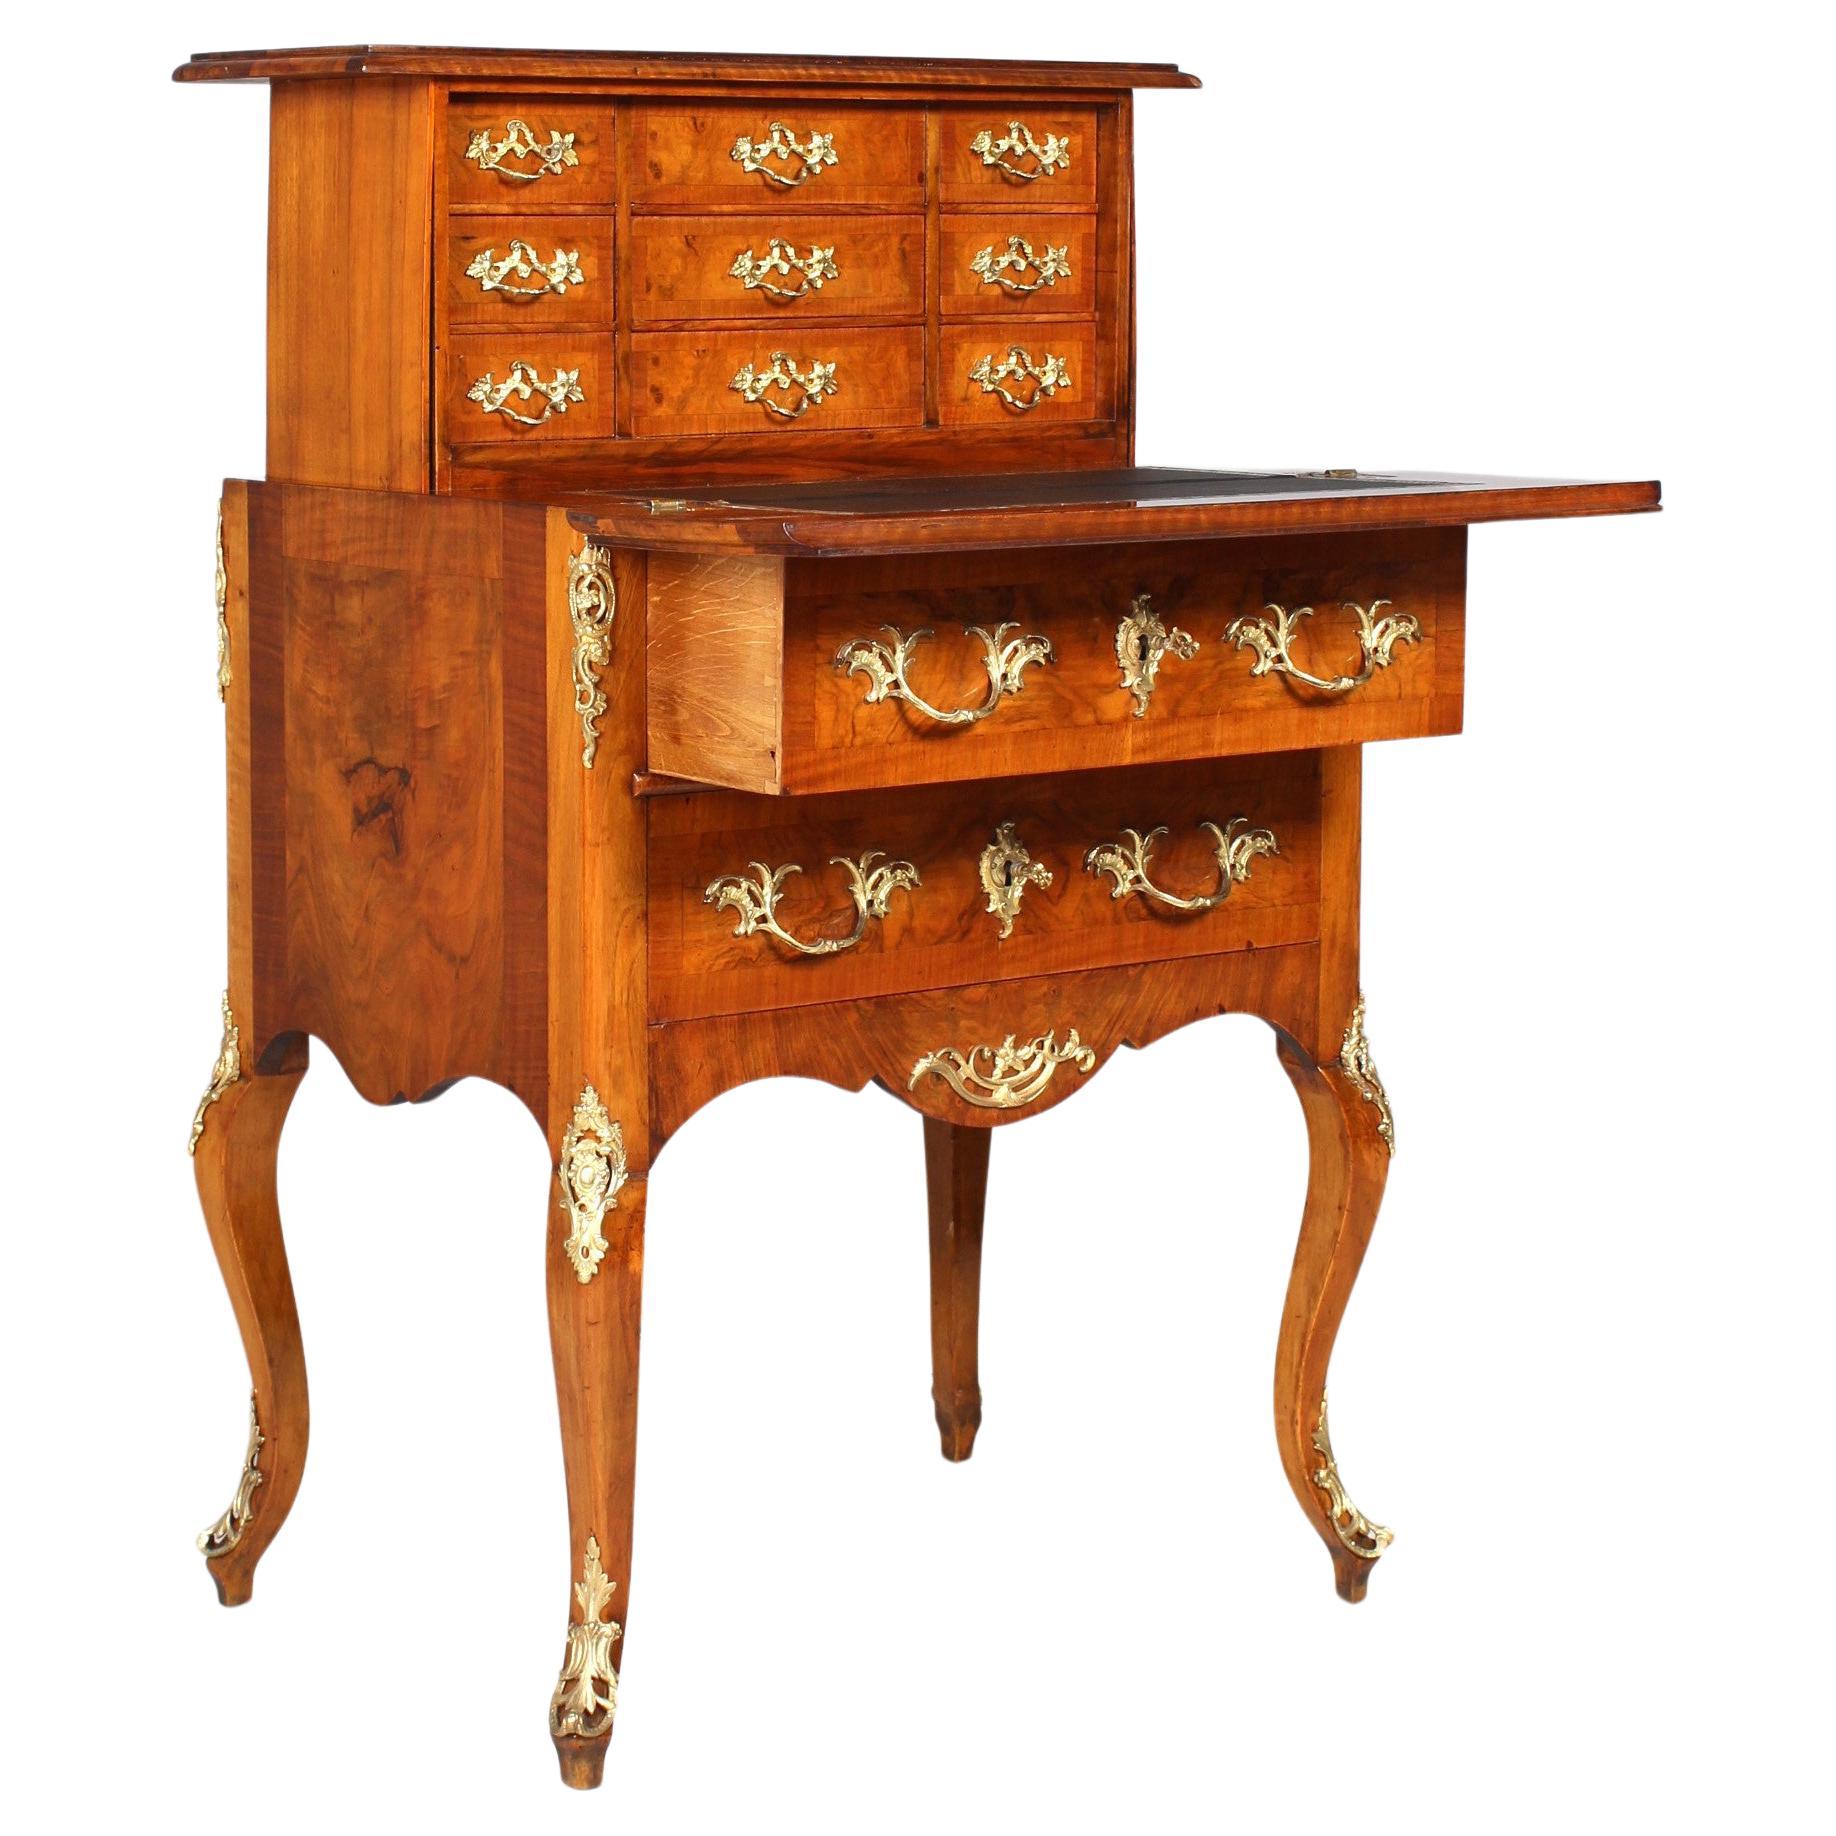 Secretaire à la Bourgogne, Transformation Table, Louis XV Style, 19th Century For Sale